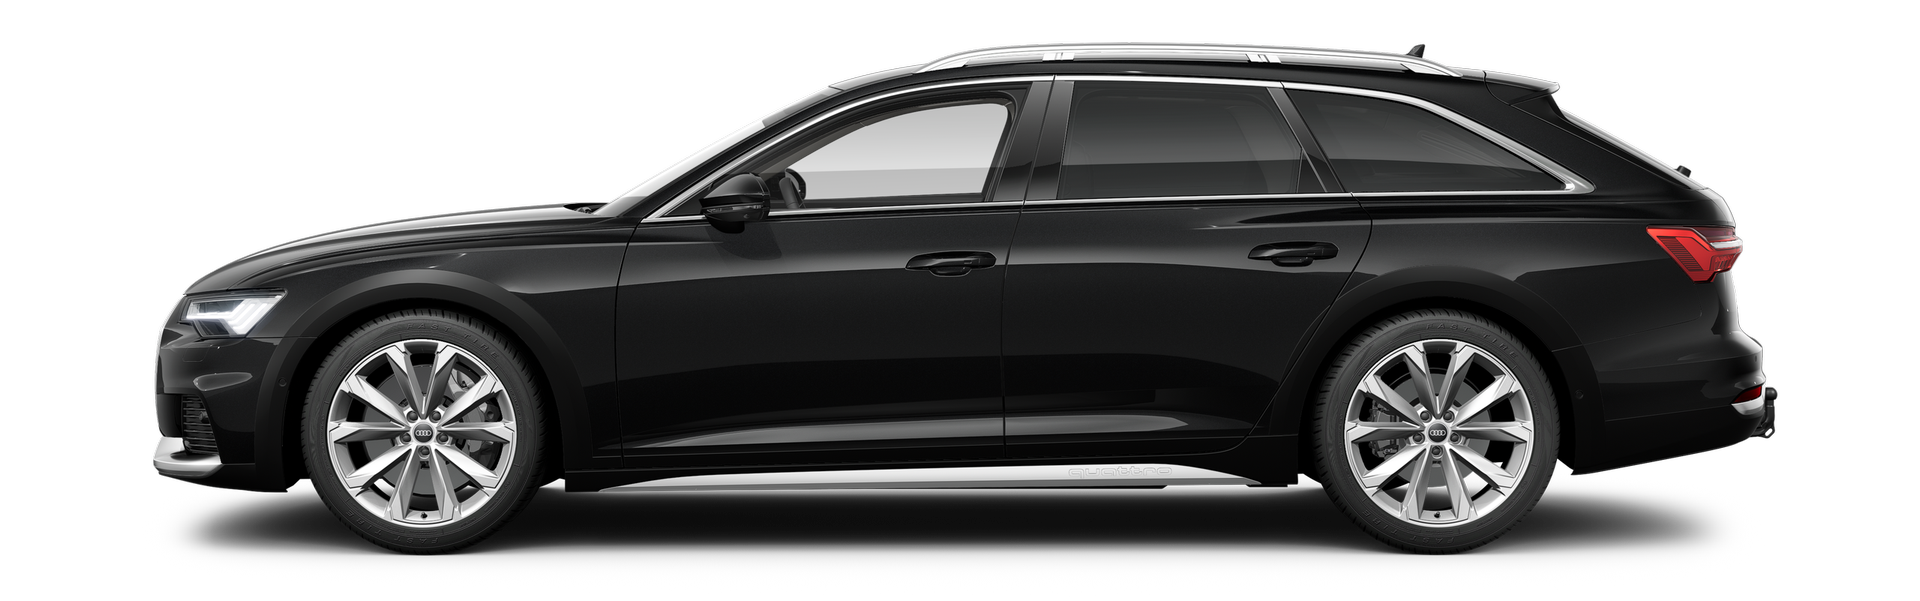 أودي S6 exterior - Side Profile